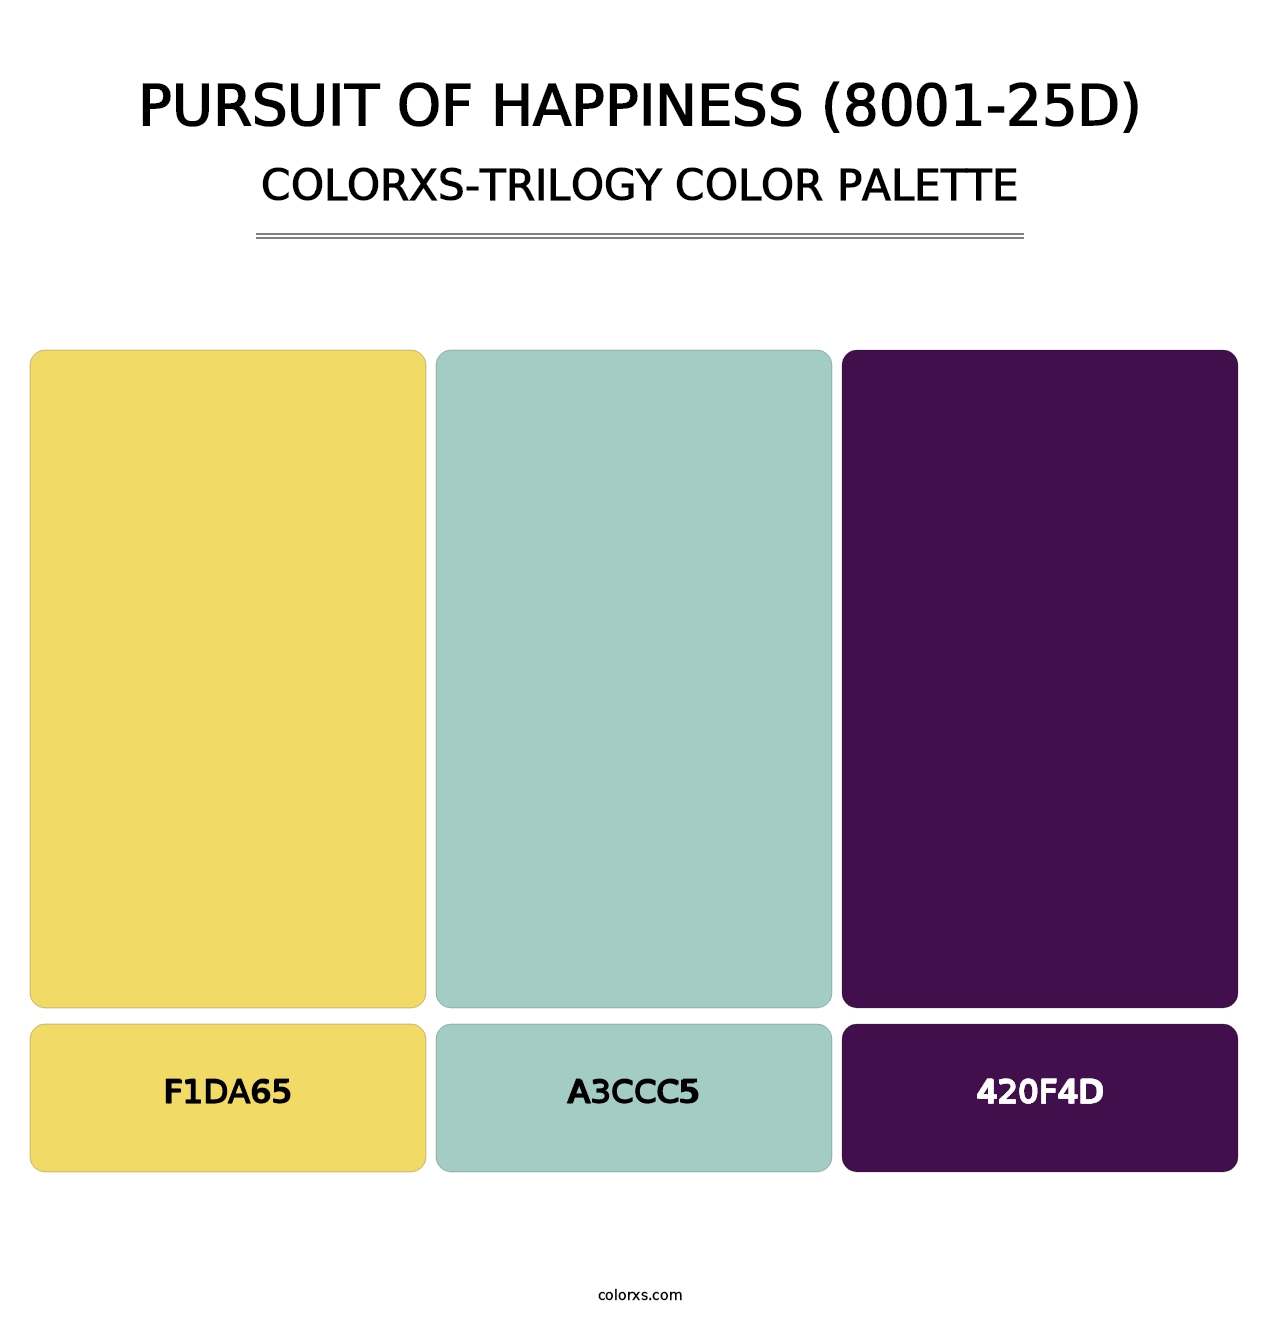 Pursuit of Happiness (8001-25D) - Colorxs Trilogy Palette